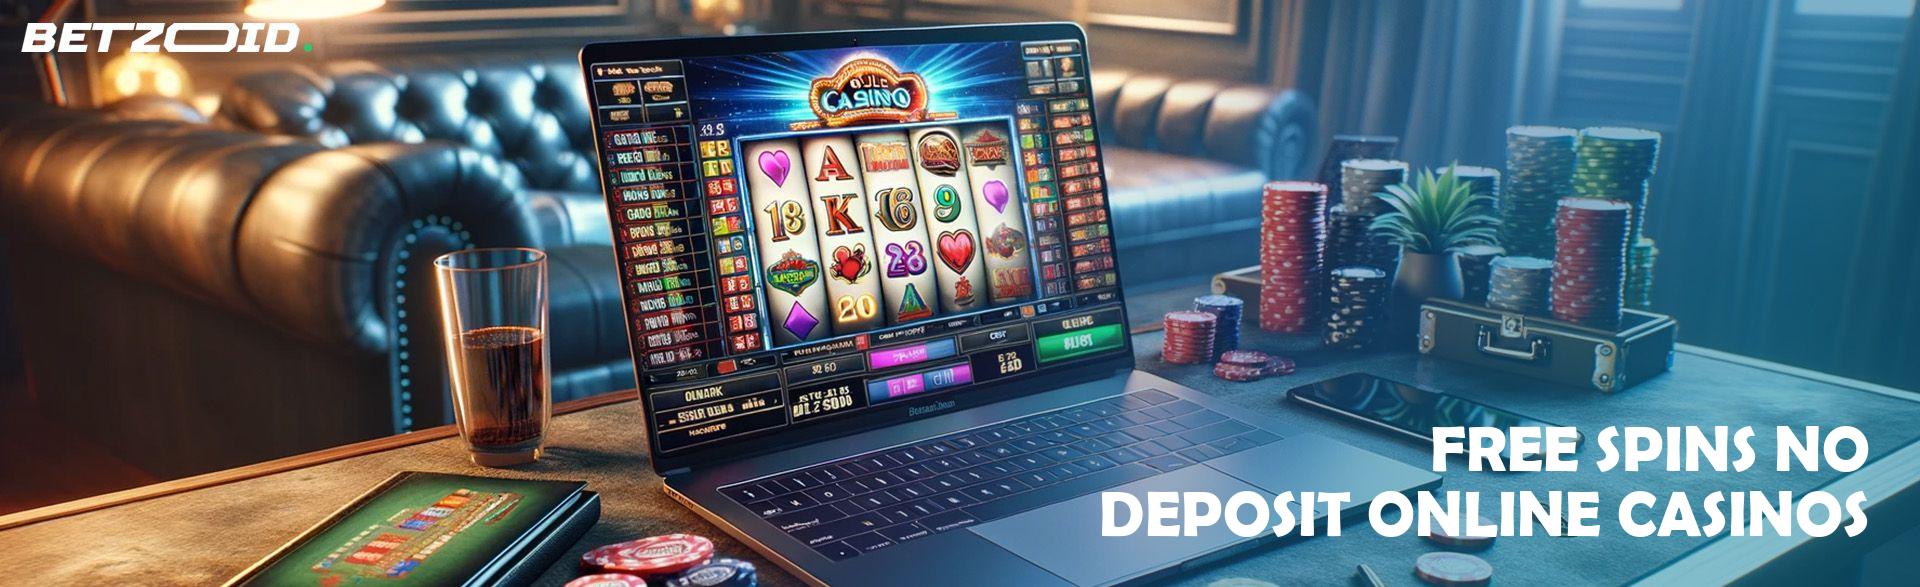 Free Spins No Deposit Online Casinos.